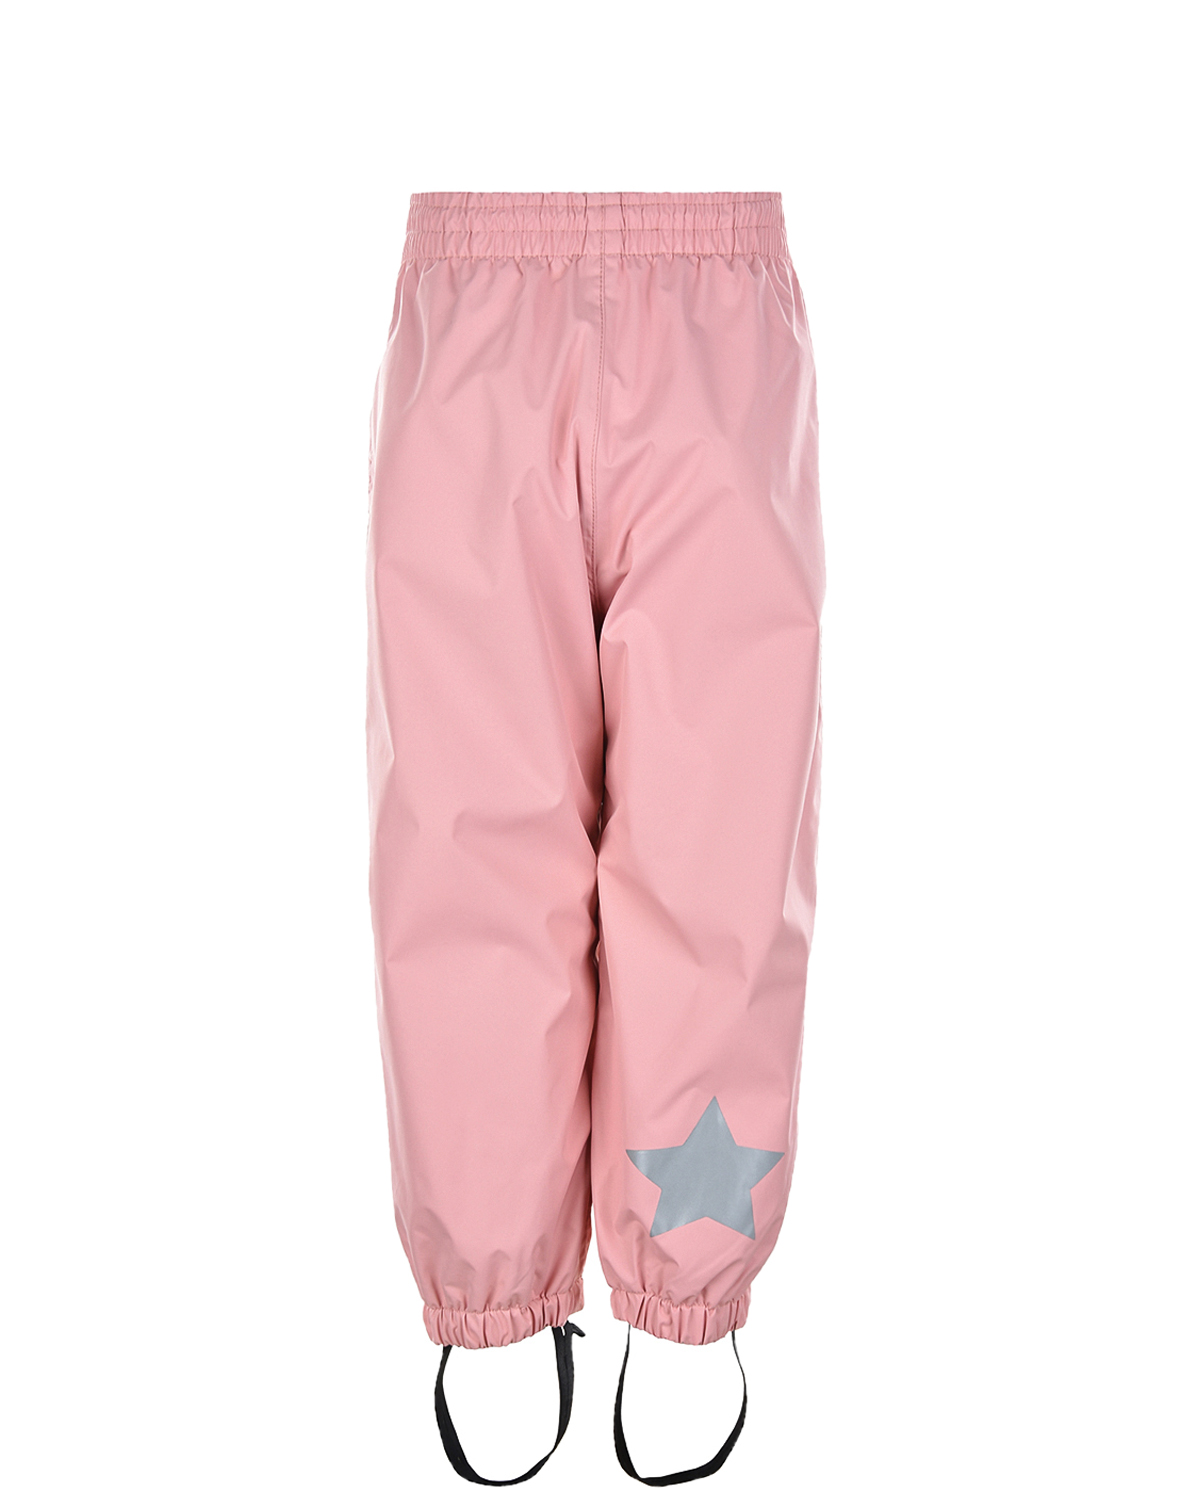 Мембранные брюки Waits "Rosequartz" Molo детские, размер 104, цвет розовый - фото 2